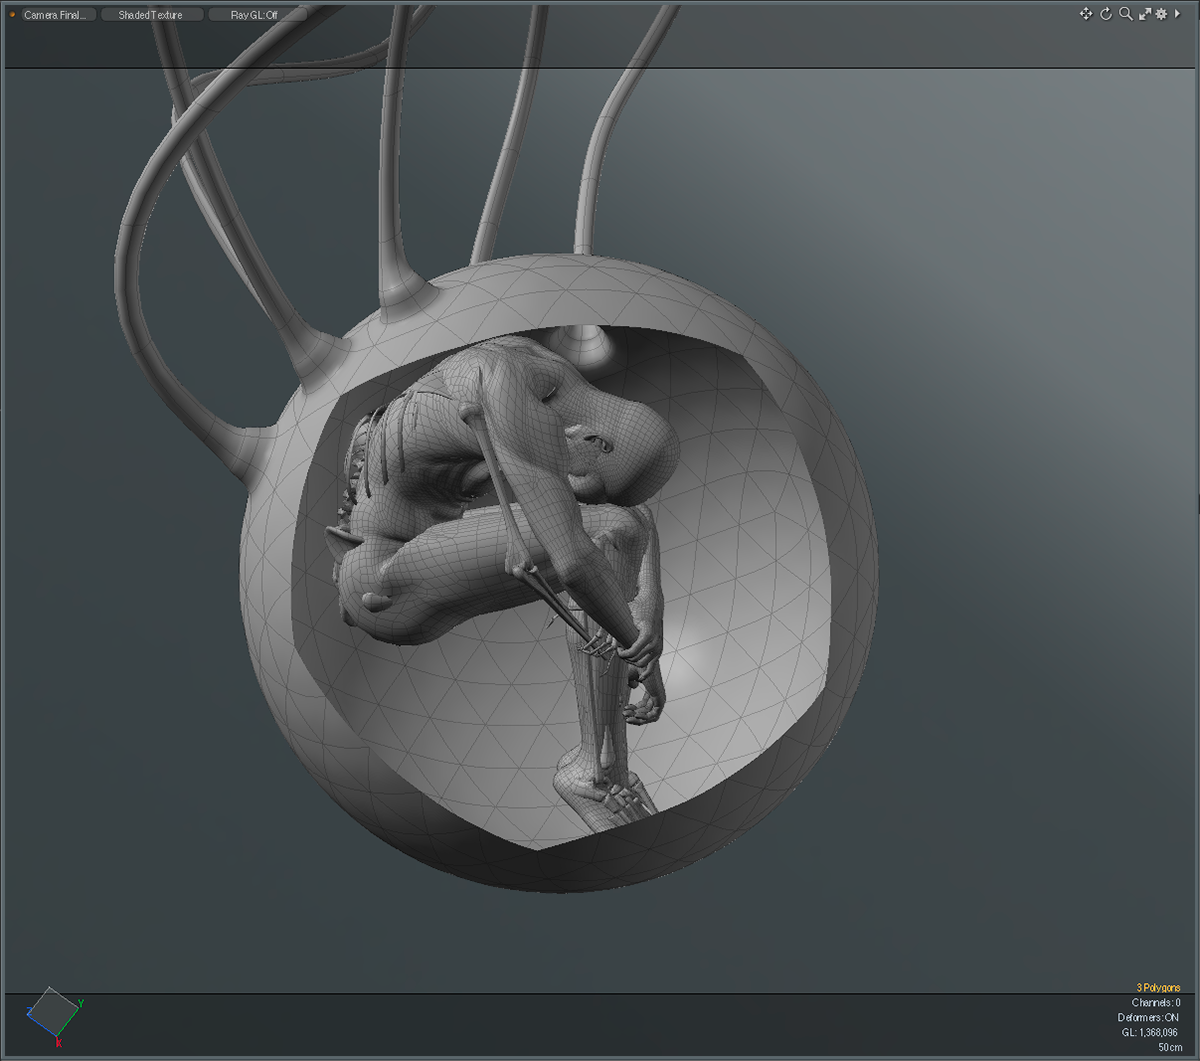 skeleton sphere glass Embryo 3D nft rendering fantasy modern surreal